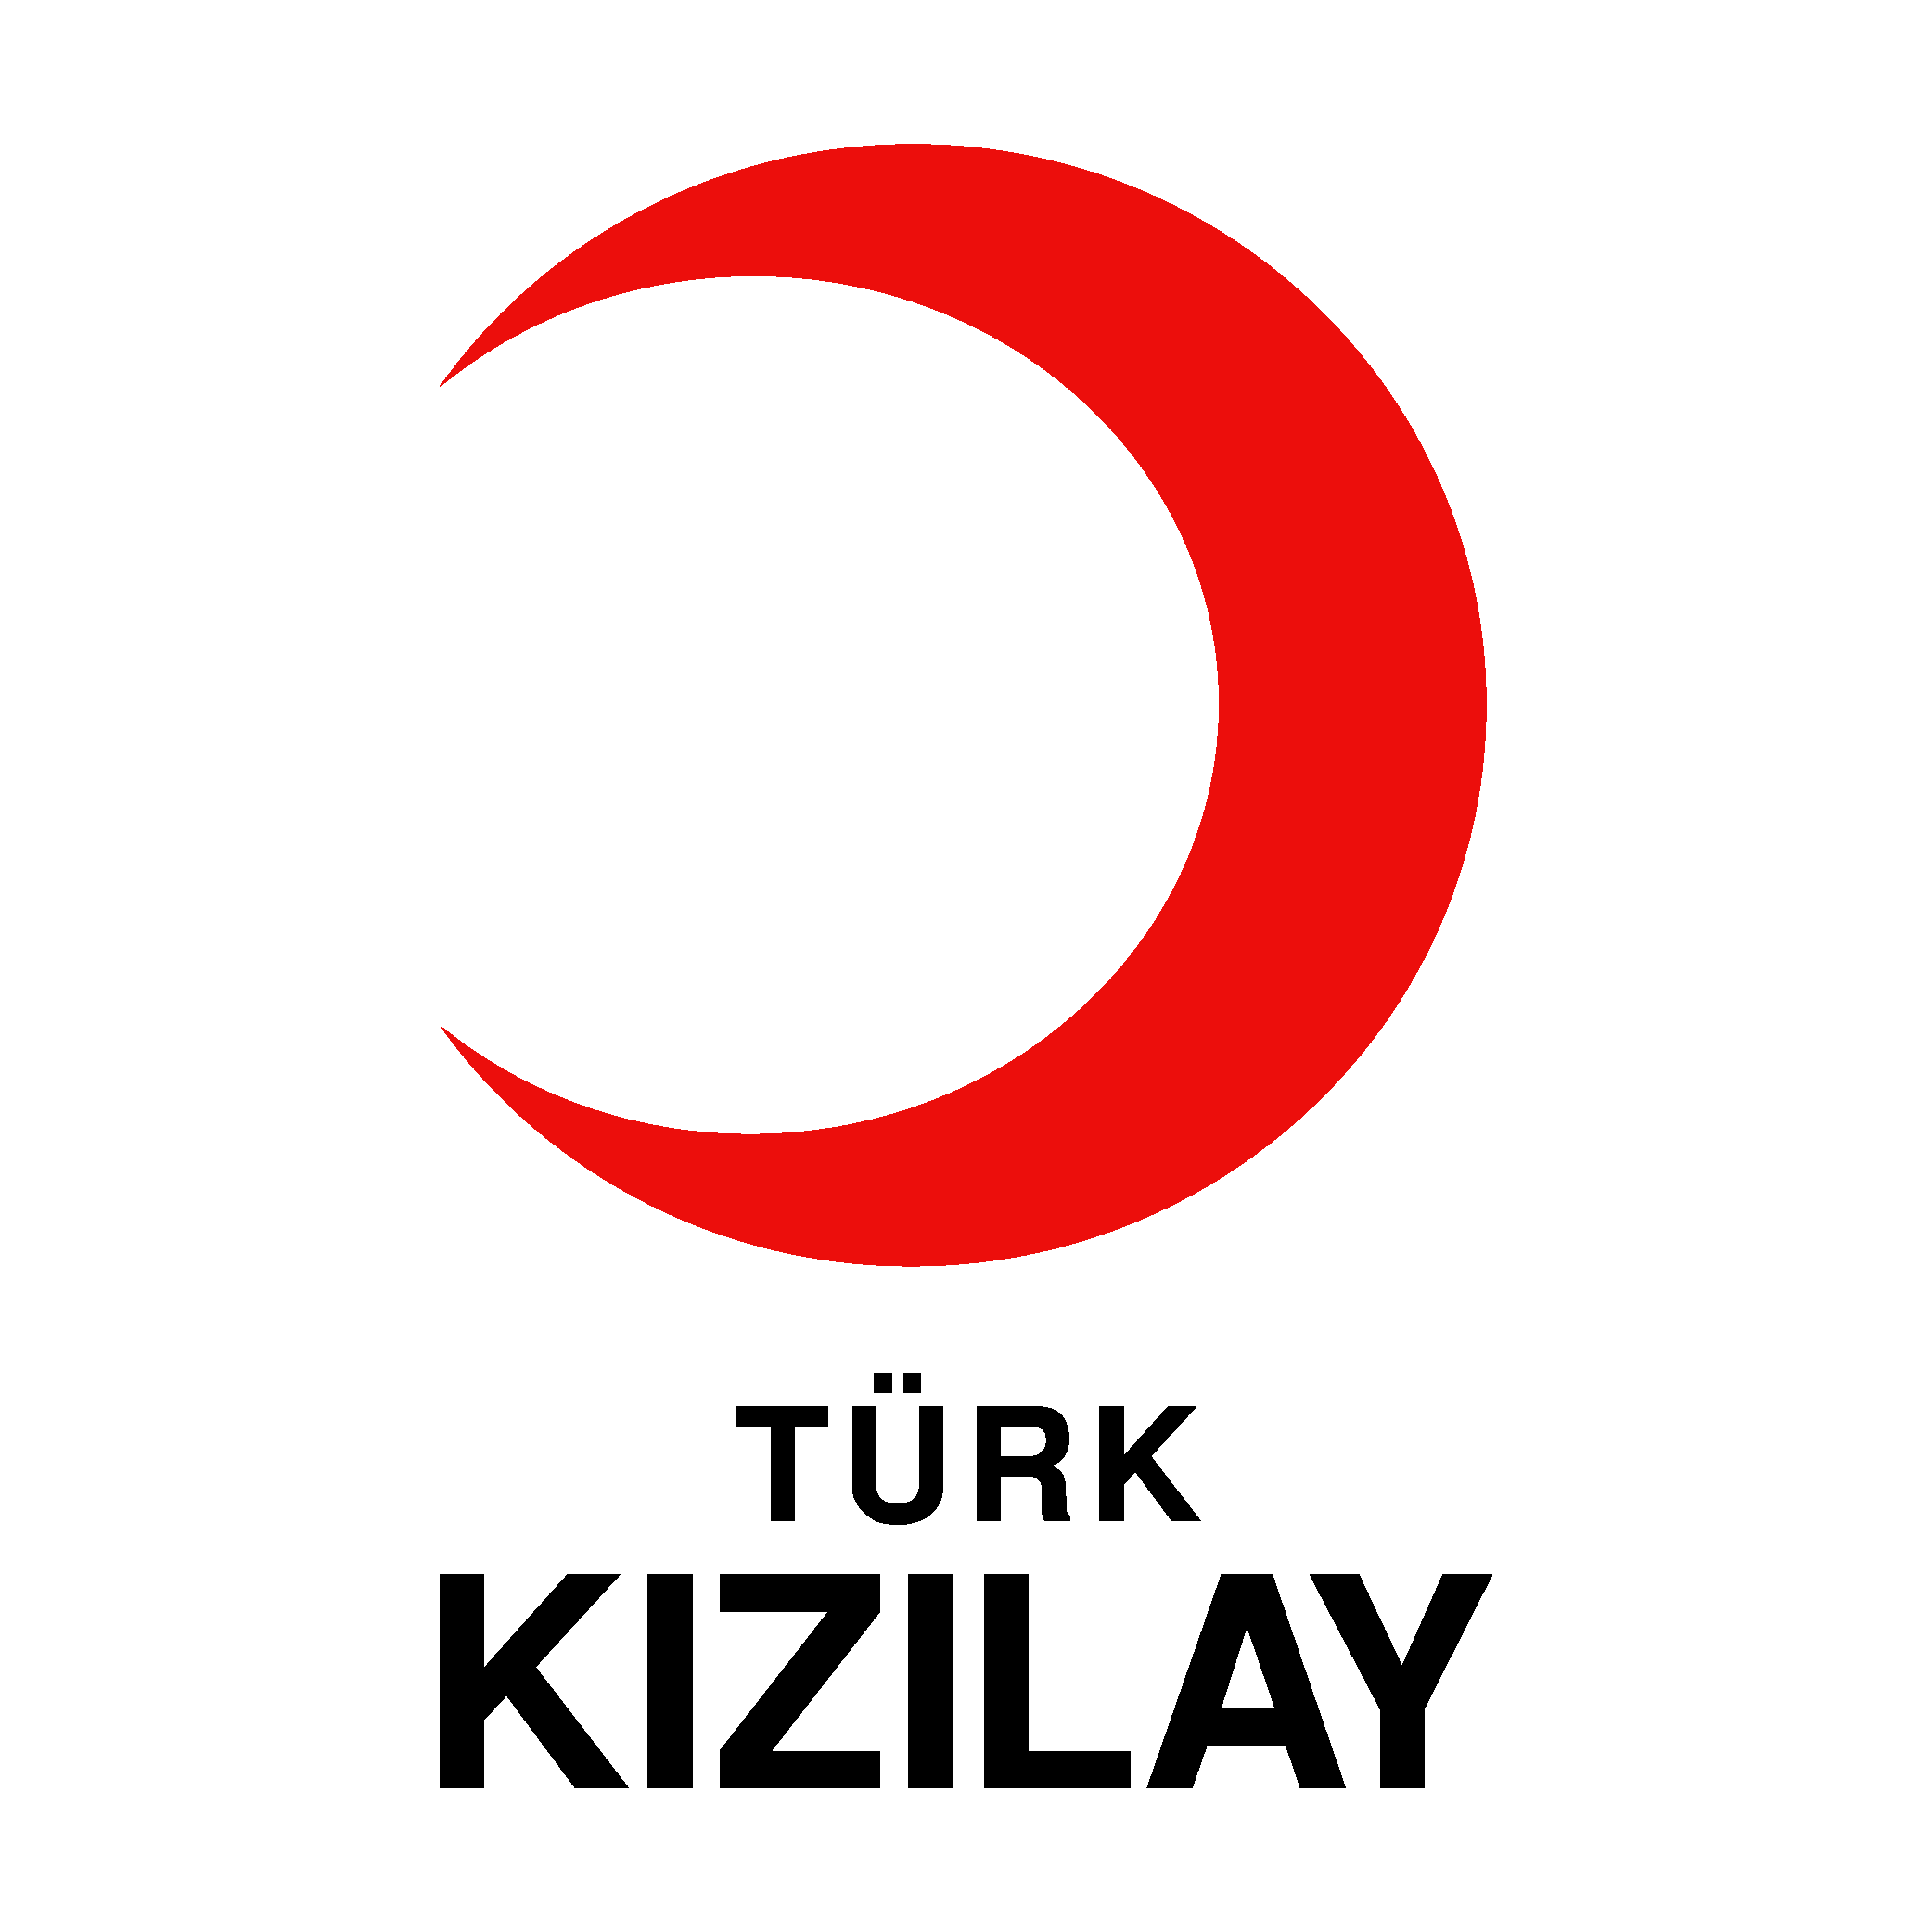 Türk K?z?lay Logo - Turkish Red Crescent